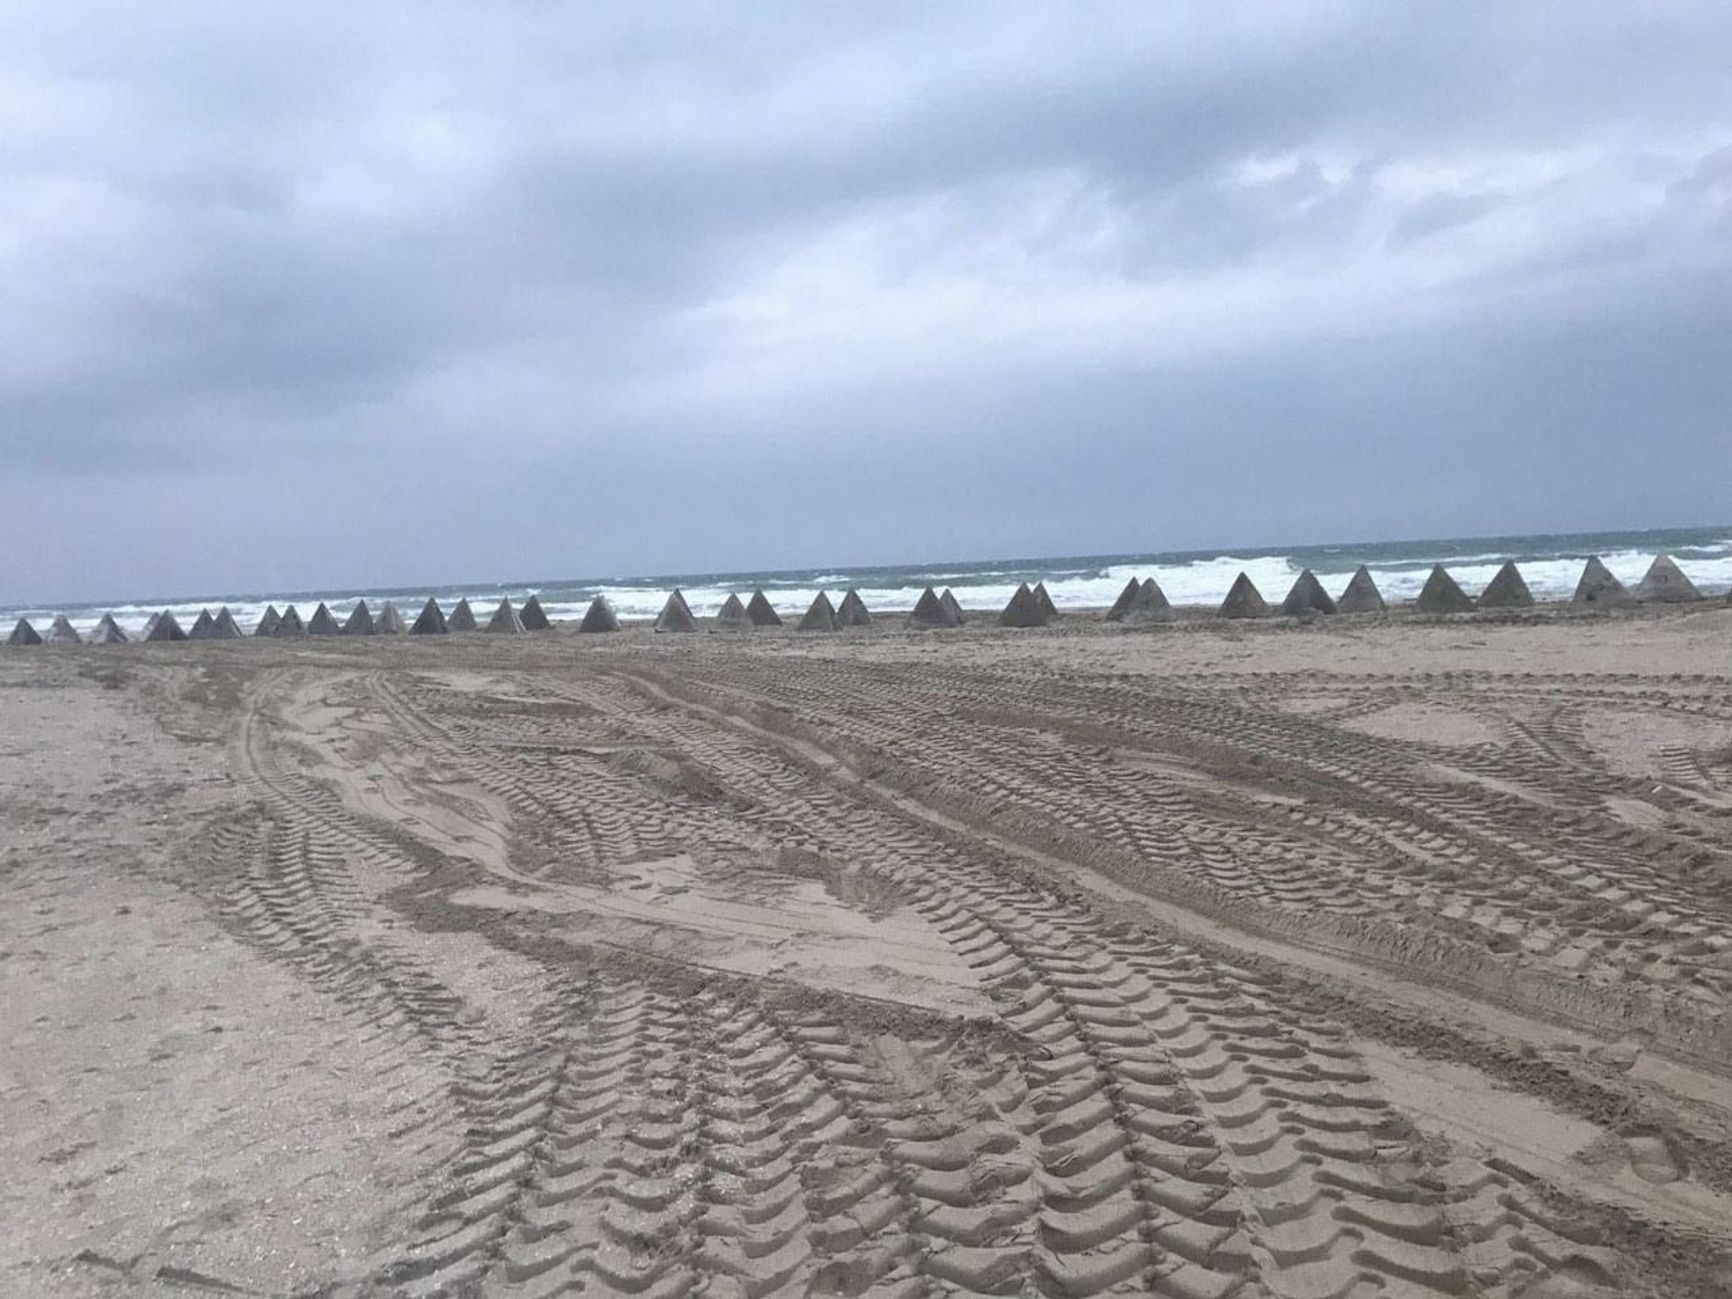 Бетонные заграждения, они же «зубы дракона», на одном из крымских пляжей